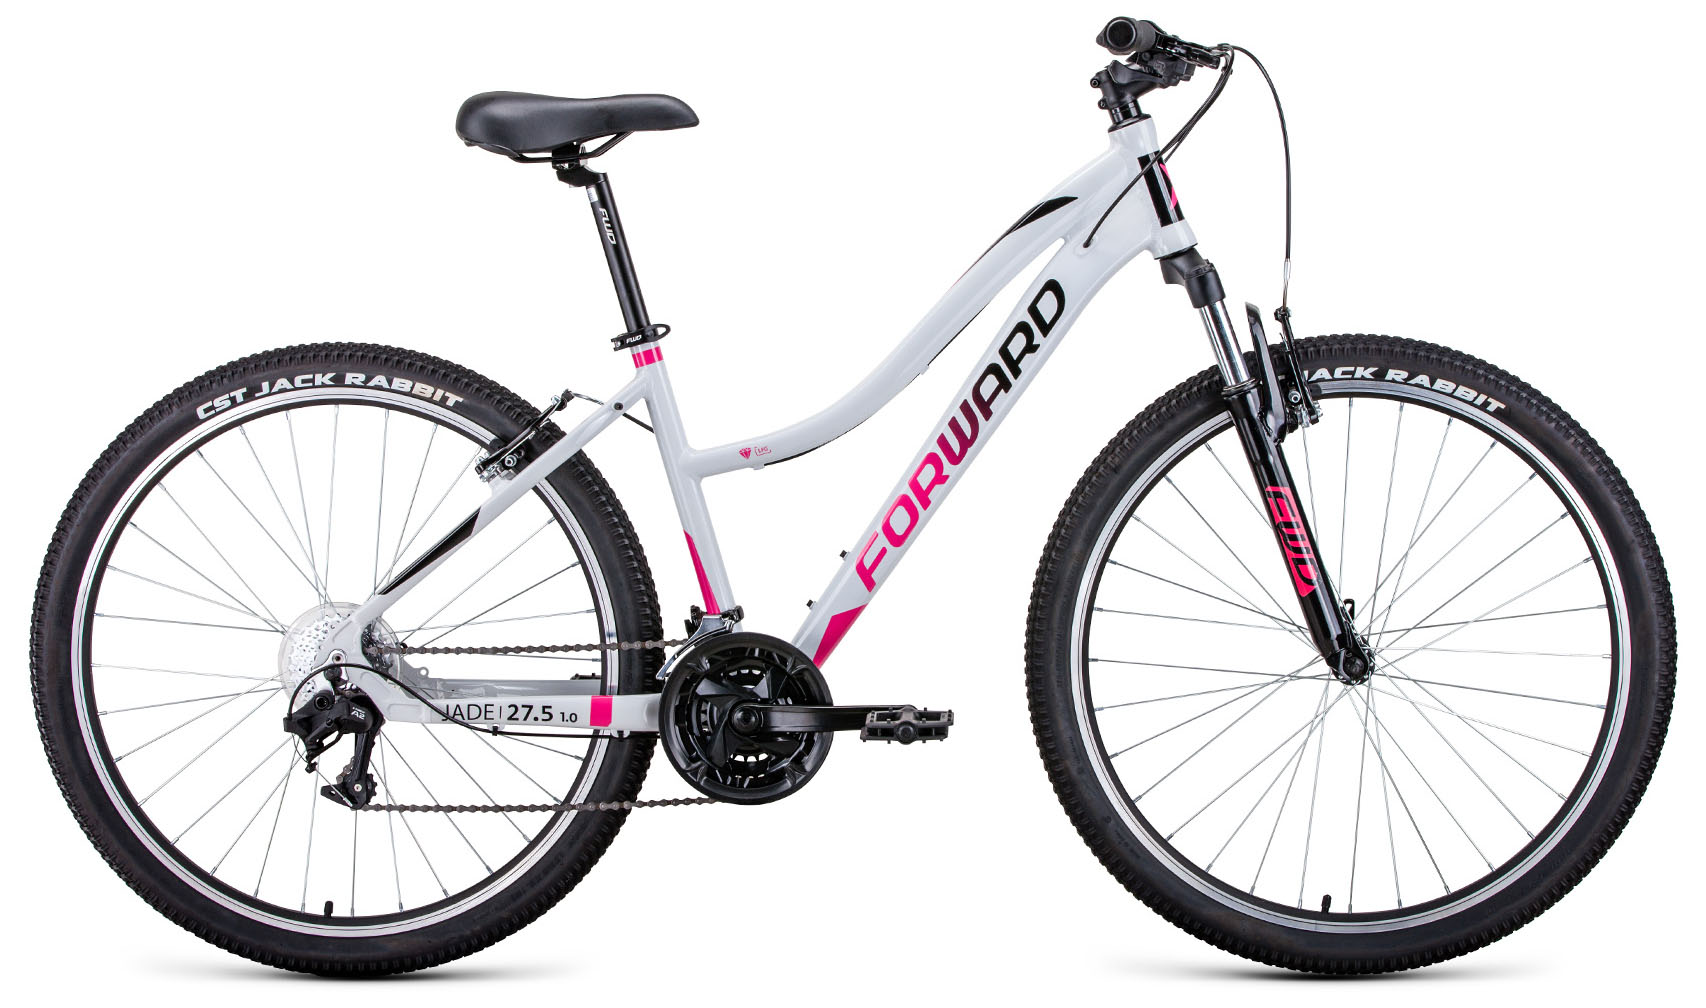  Отзывы о Женском велосипеде Forward Jade 27,5 1.0 2022